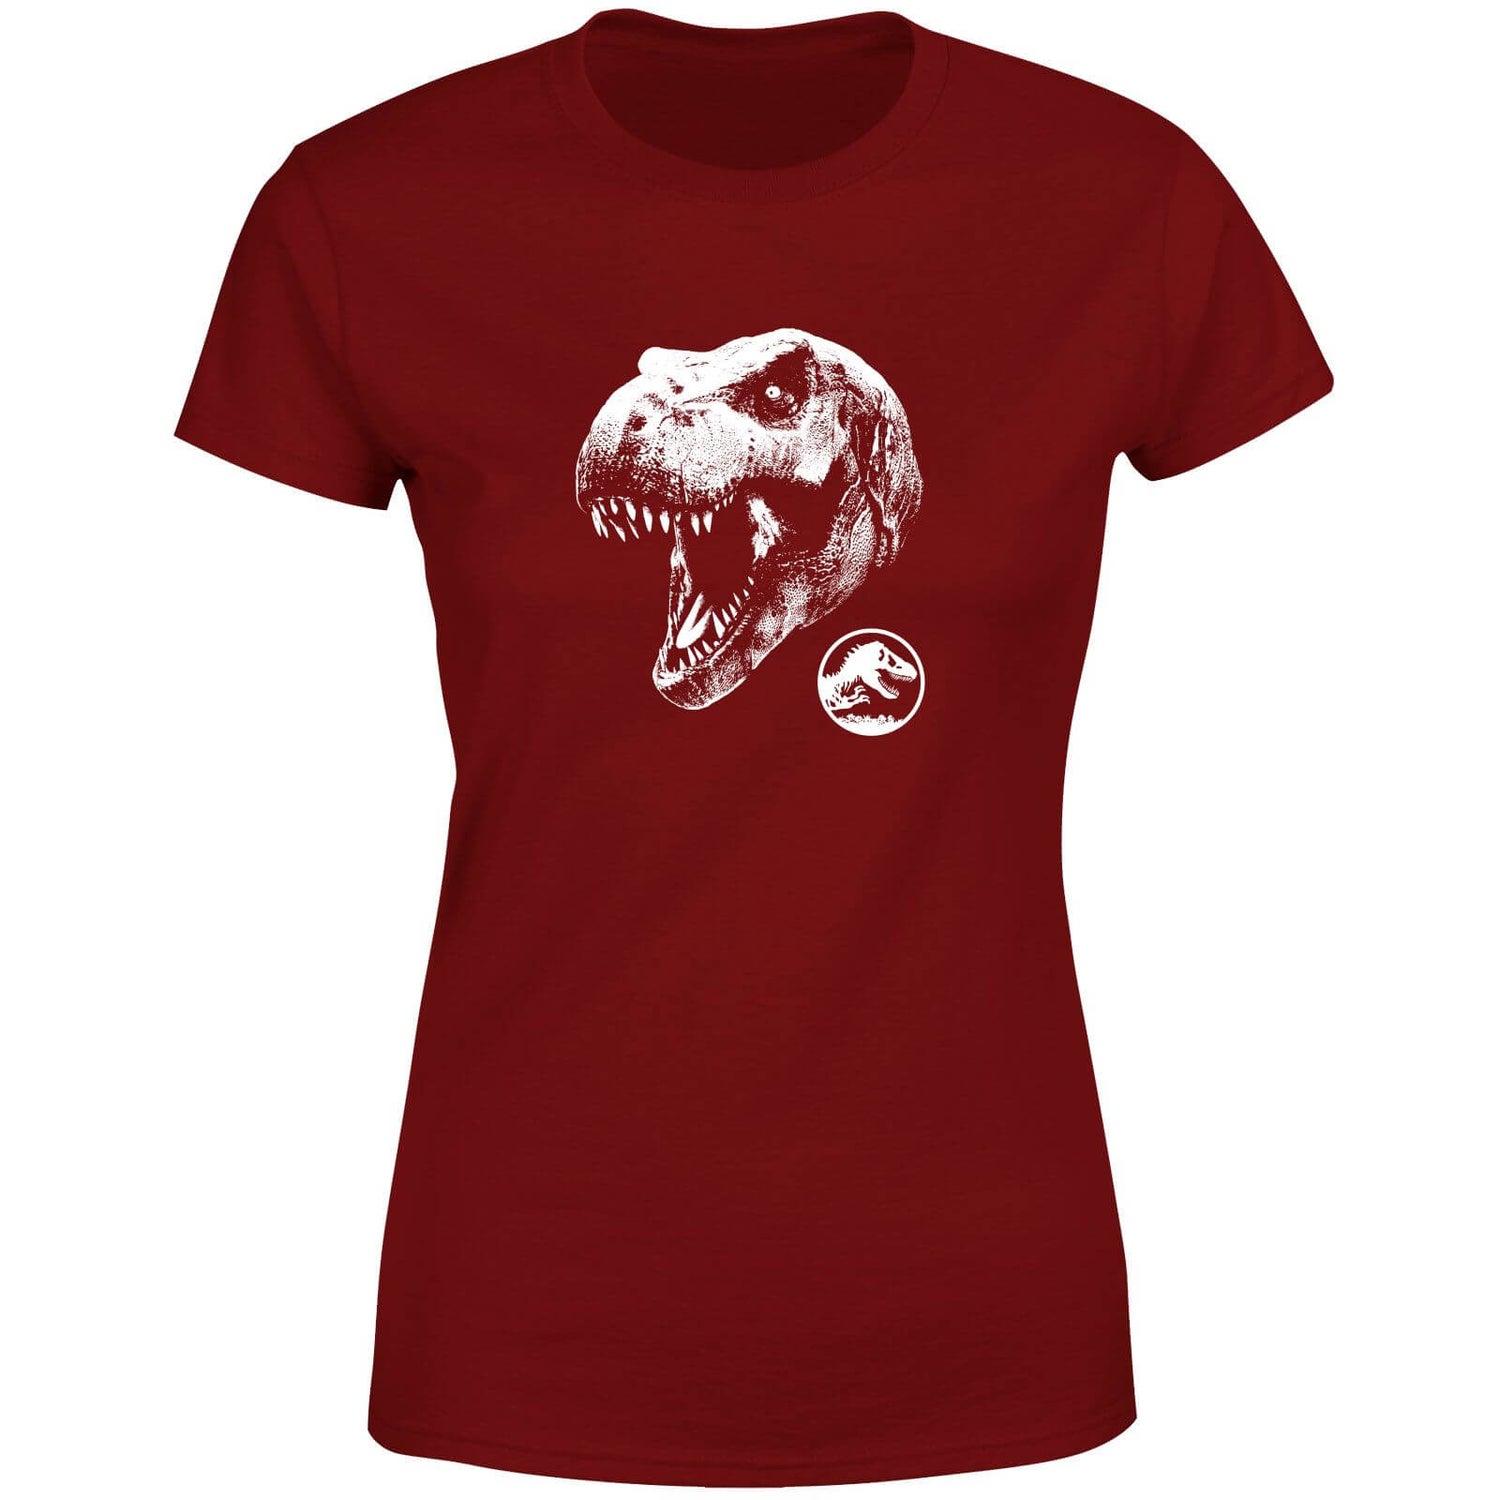 Jurassic Park T Rex Women's T-Shirt - Burgundy